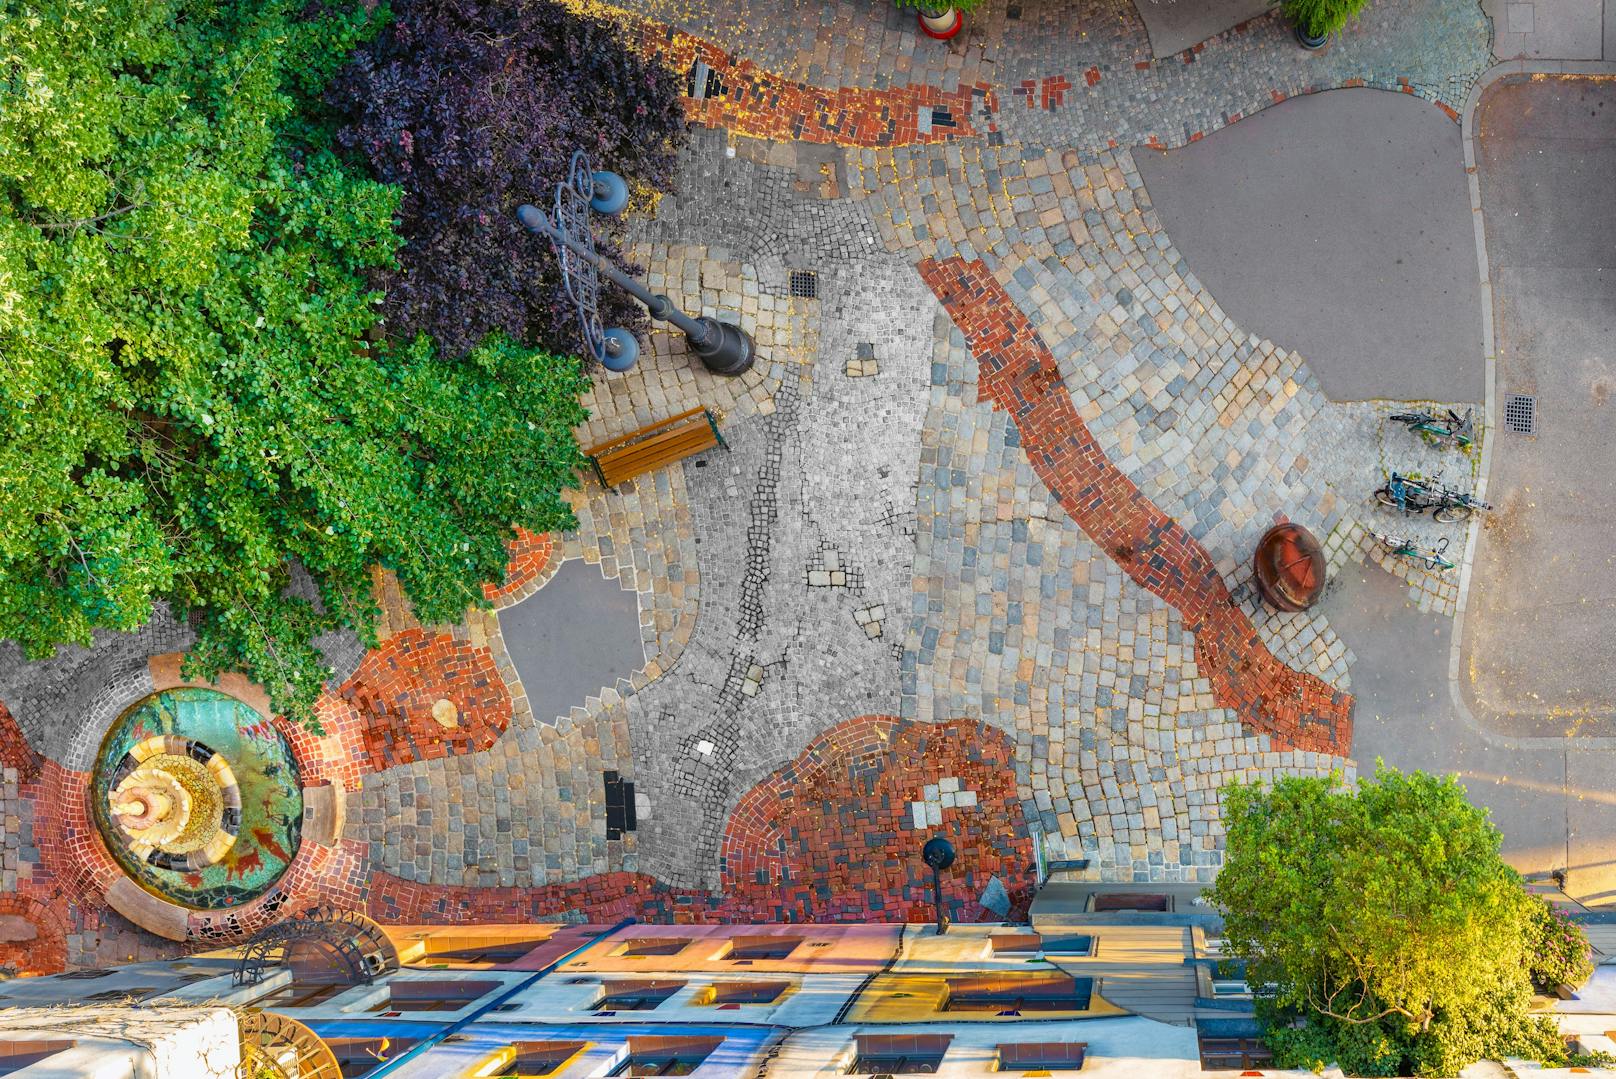 Hundertwasser entwickelte seinen eigenen Stil, der sich durch unregelmäßige Linien, Spiralen und lebhafte Farben auszeichnet.